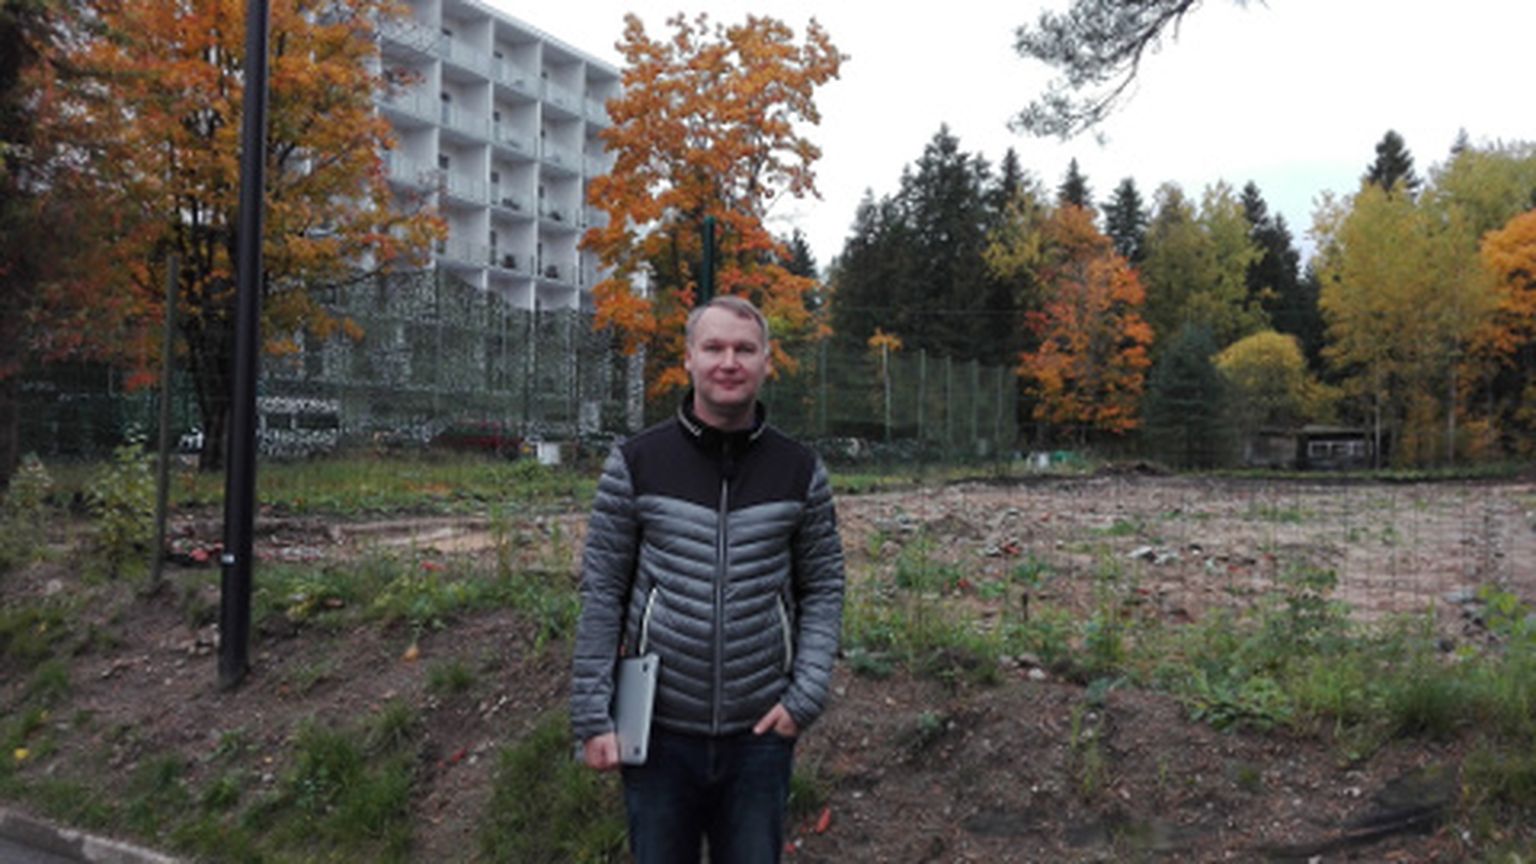 Projektijuht Pavel Ivanov seisab ehitusplatsi ääres, kuhu kavatsetakse ehitada 37 korteriga puhkemaja. Sellega paraneb ka kuurortlinna ilme, sest varem asus Nooruse spaa kõrval kasutuseta amortiseerunud hoone.